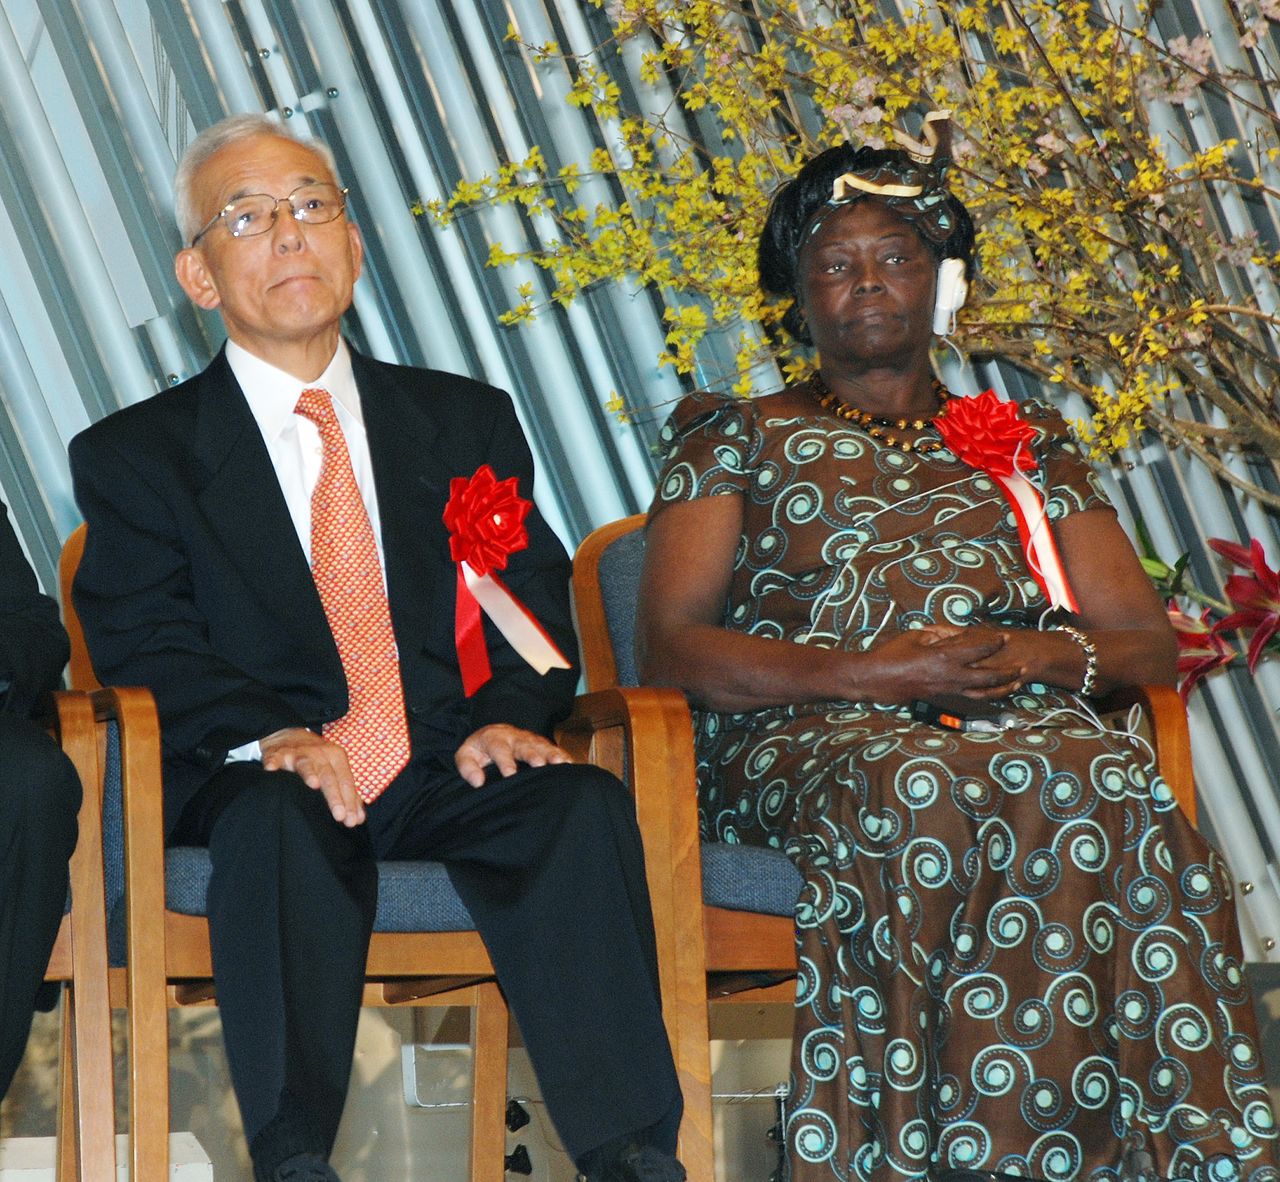 Лауреат Нобелевской премии мира 2004 года Вангари Маатай (справа), известная в связи с движением «Моттайнай» и старший исследователь Принстонского университета Манабэ Сюкуро на церемонии вручения награды «Зала славы глобальной окружающей среды в Киото», 14 февраля 2010 г., город Киото (© Jiji Press)